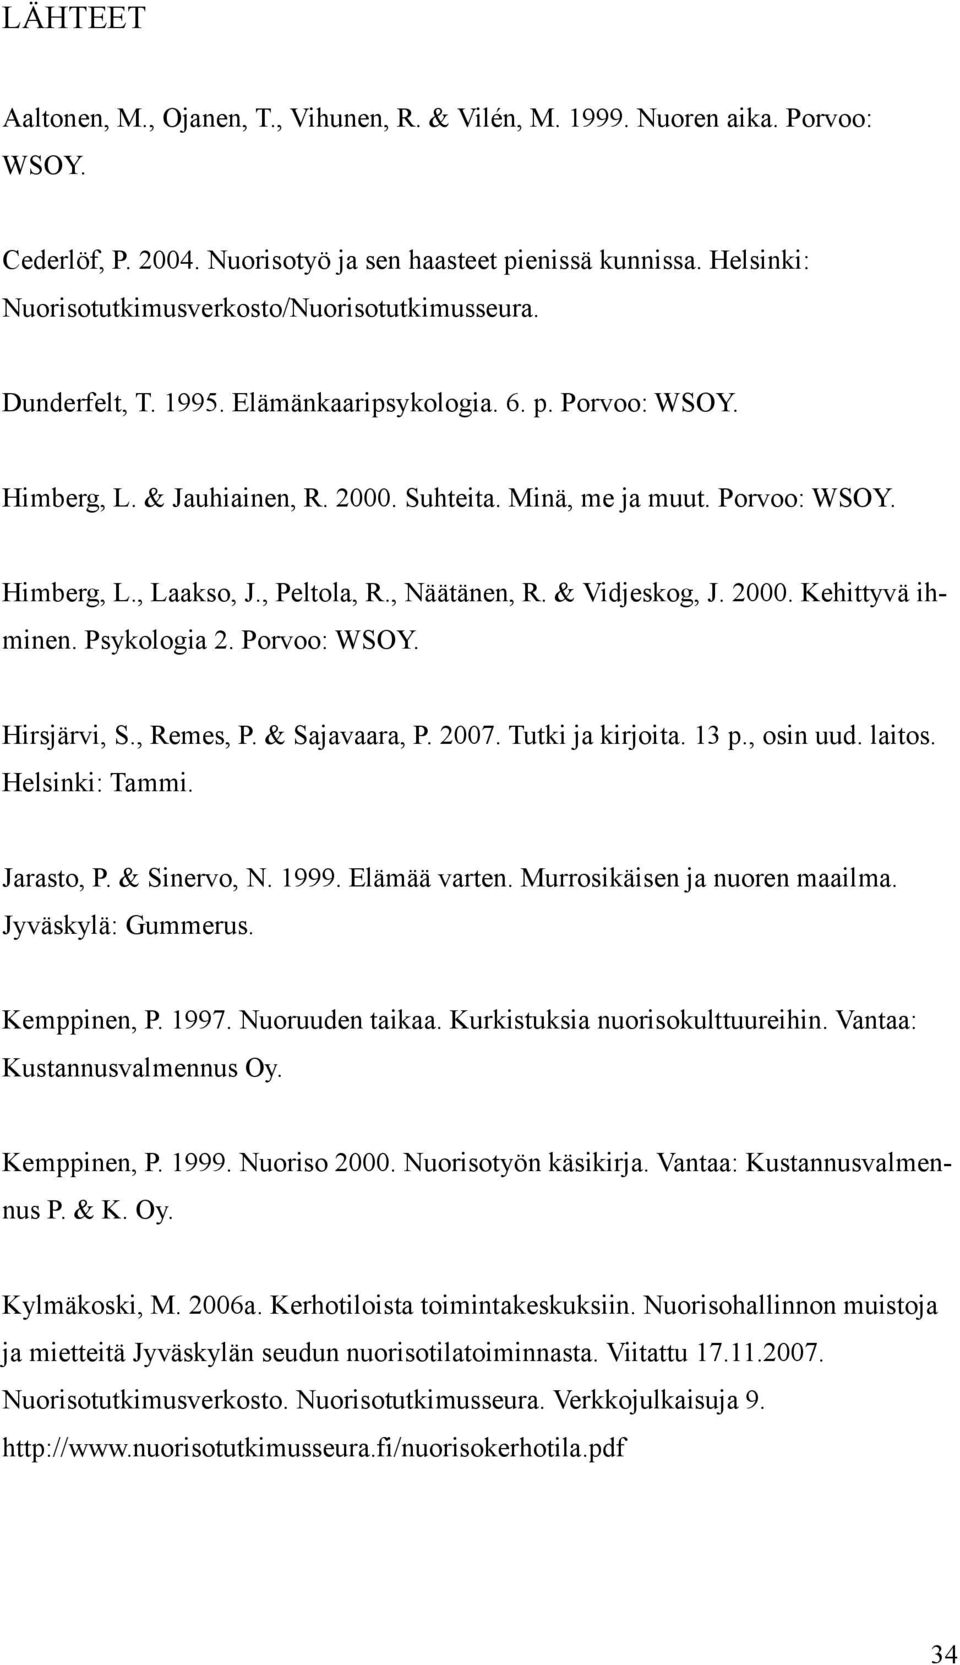 , Peltola, R., Näätänen, R. & Vidjeskog, J. 2000. Kehittyvä ihminen. Psykologia 2. Porvoo: WSOY. Hirsjärvi, S., Remes, P. & Sajavaara, P. 2007. Tutki ja kirjoita. 13 p., osin uud. laitos.